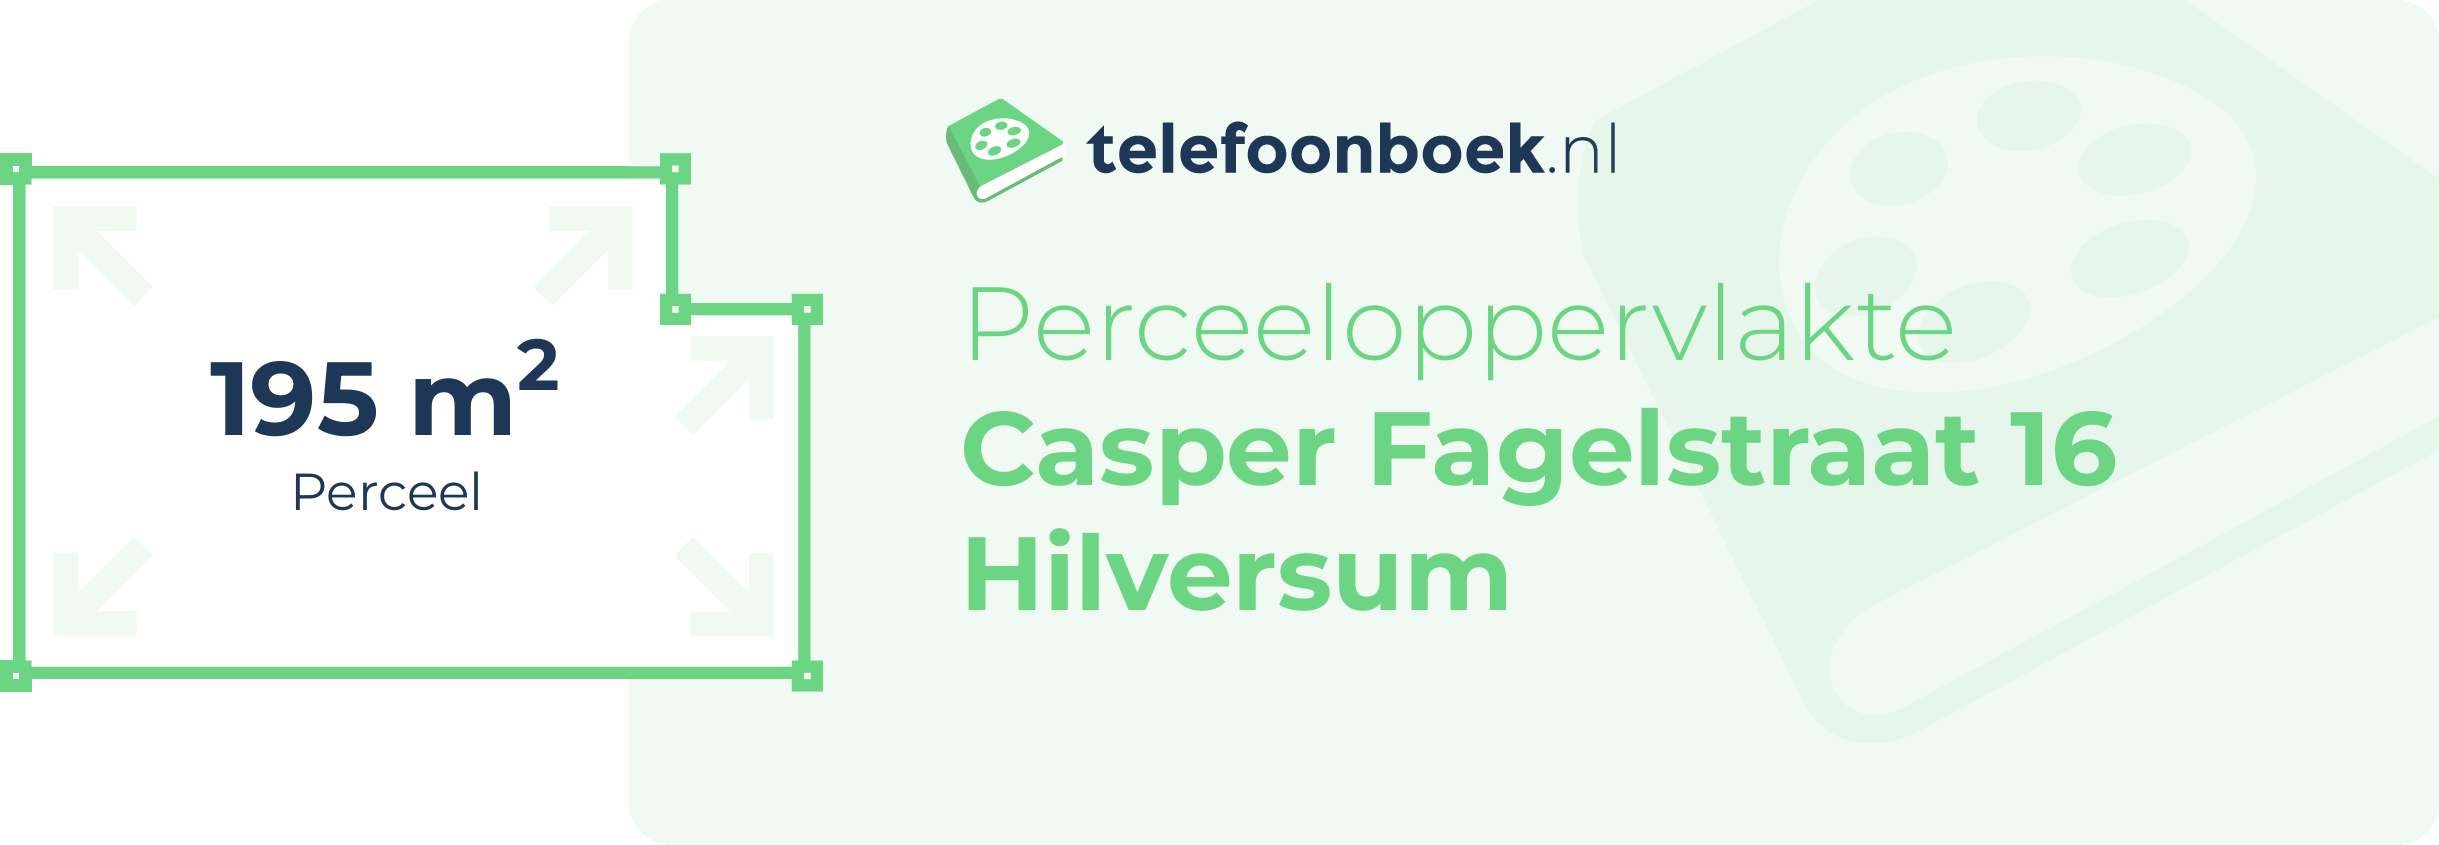 Perceeloppervlakte Casper Fagelstraat 16 Hilversum